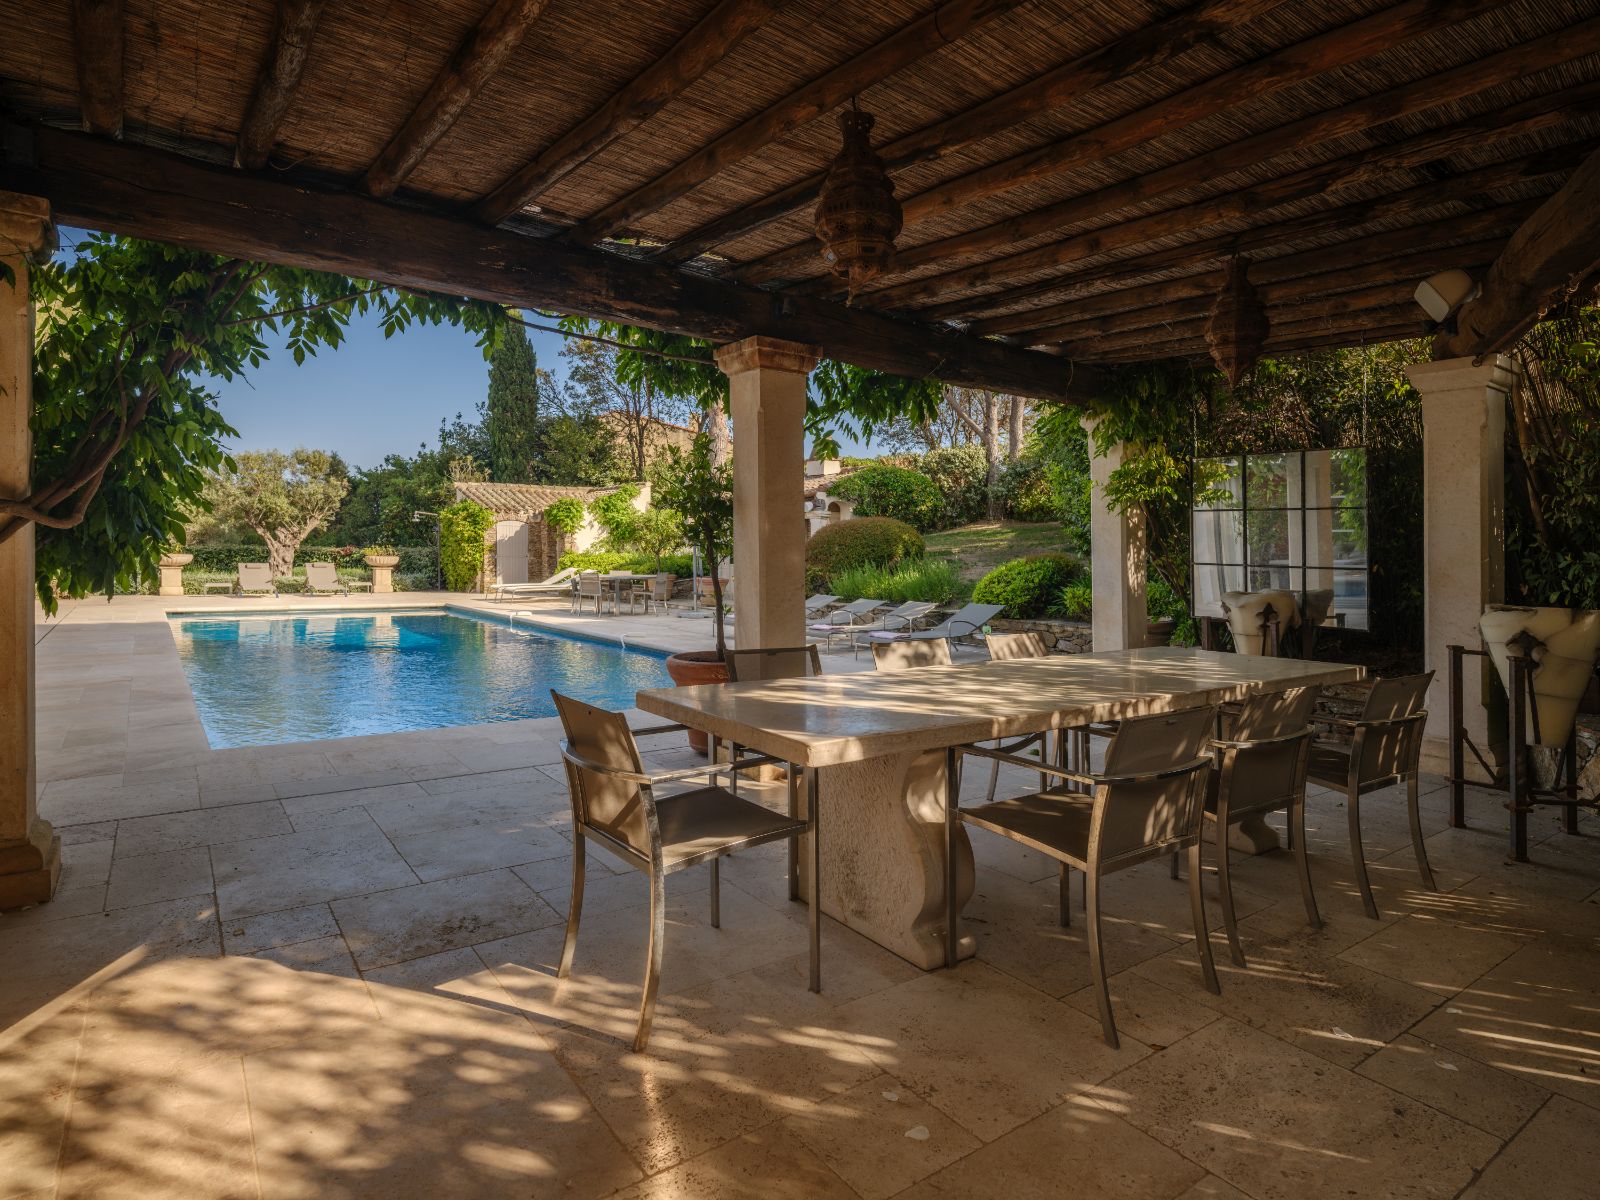 Villa Sassari outdoor dining terrace